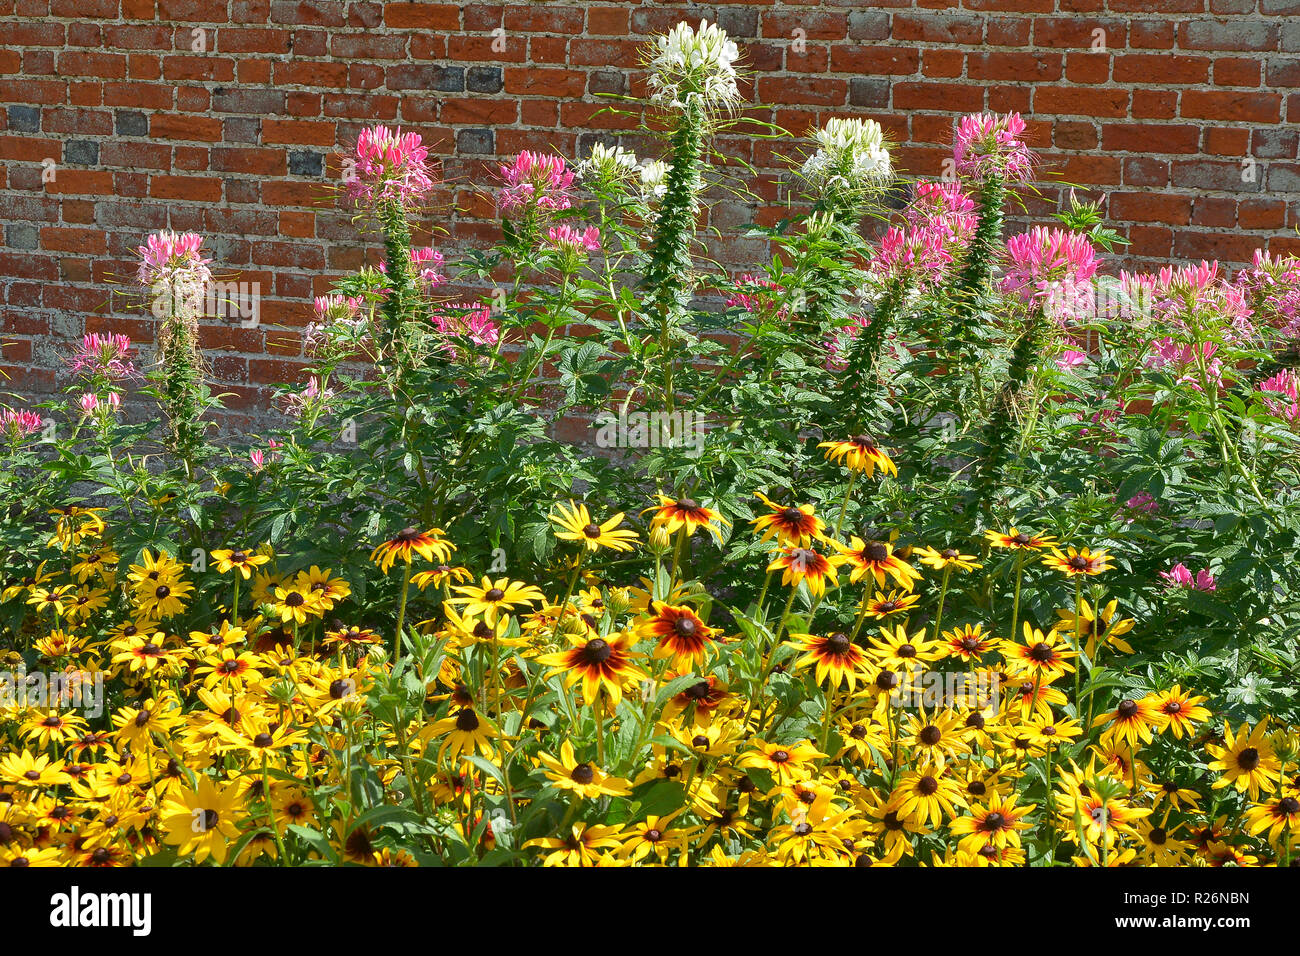 Nahaufnahme einer Blüte Grenze mit Heleniums, Cleome hassleriana Rudbeckien und in einem ummauerten Garten Stockfoto